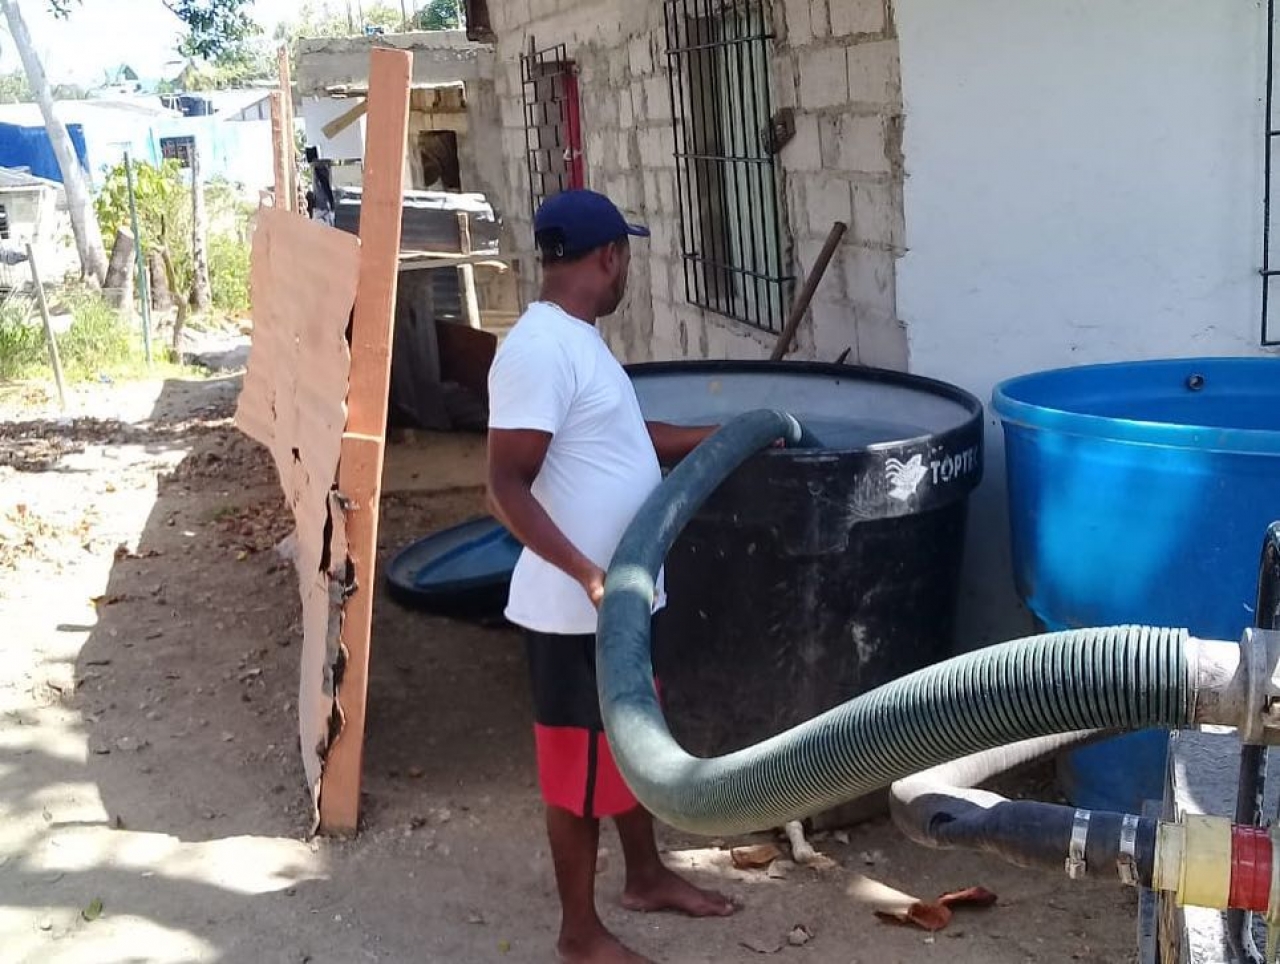 Escasez de agua en pandemia: otros problemas que enfrenta San Andrés